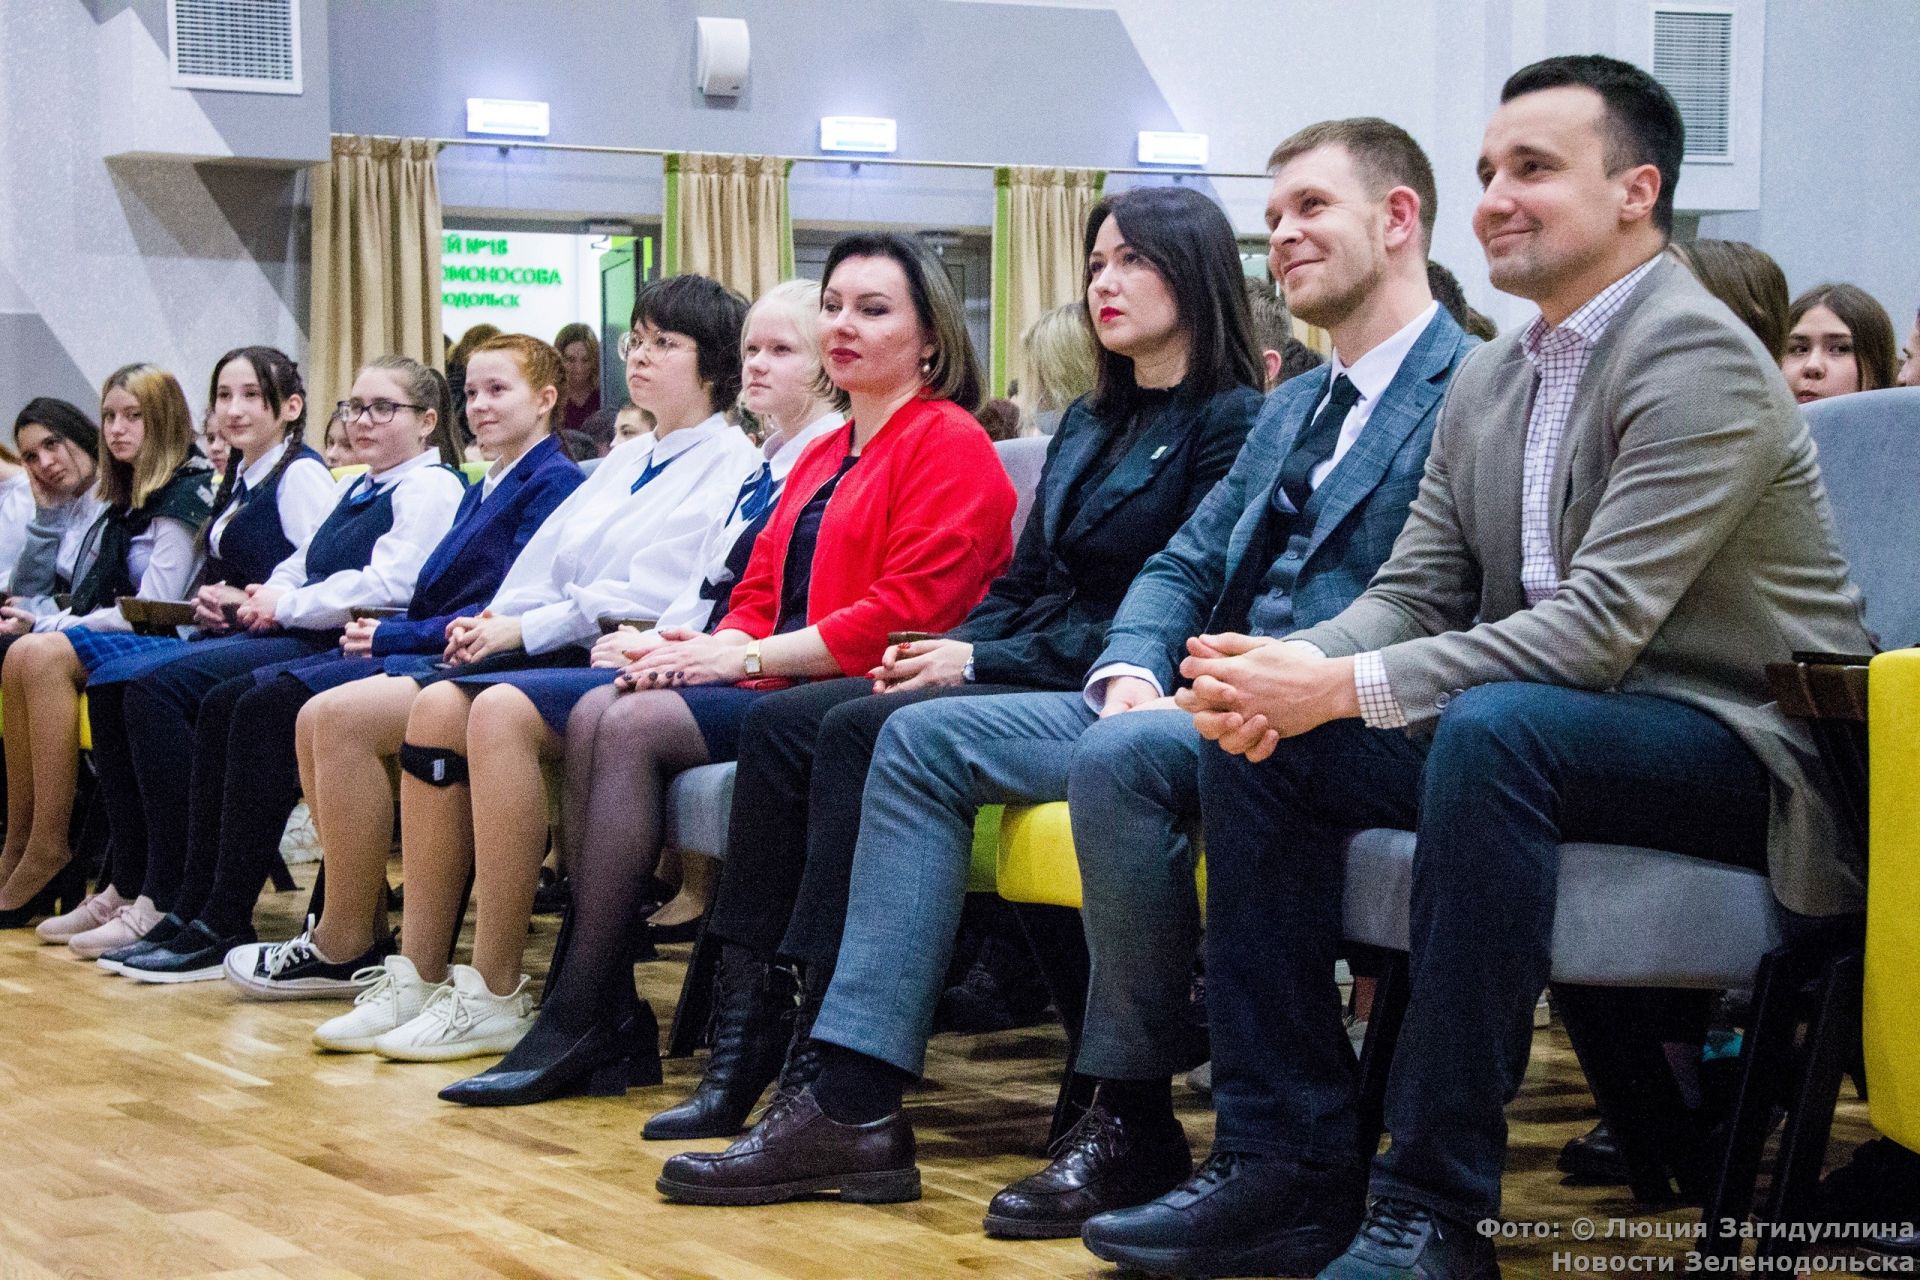 В Зеленодольске открыли первичное отделение движения детей и молодежи «Движение Первых»